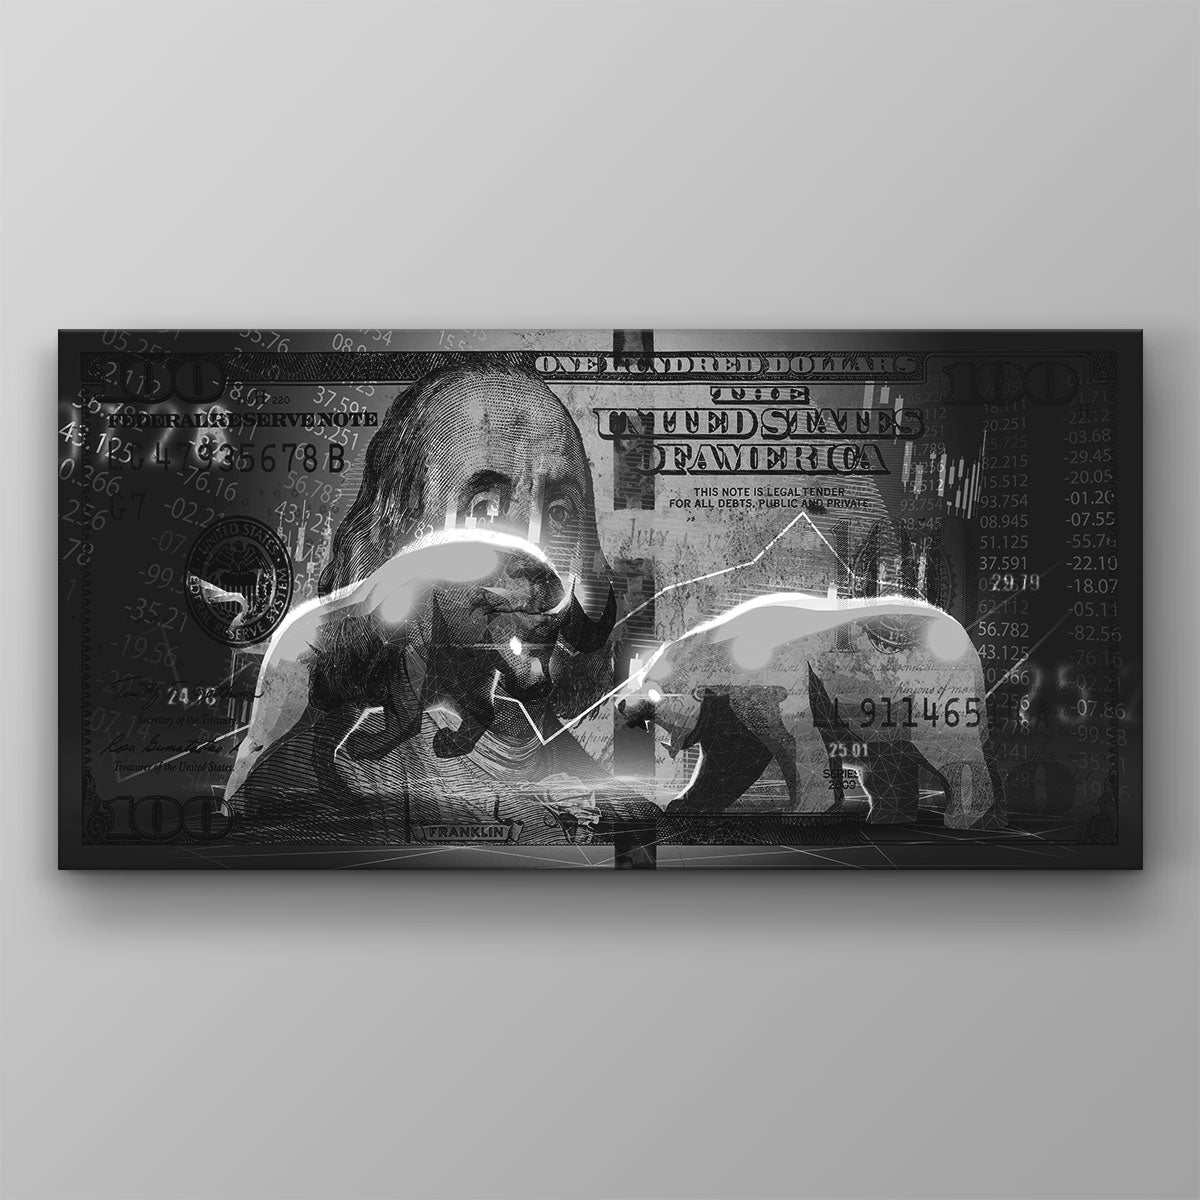 100 Dollar Bill Of Wall Street - Success Hunters Prints